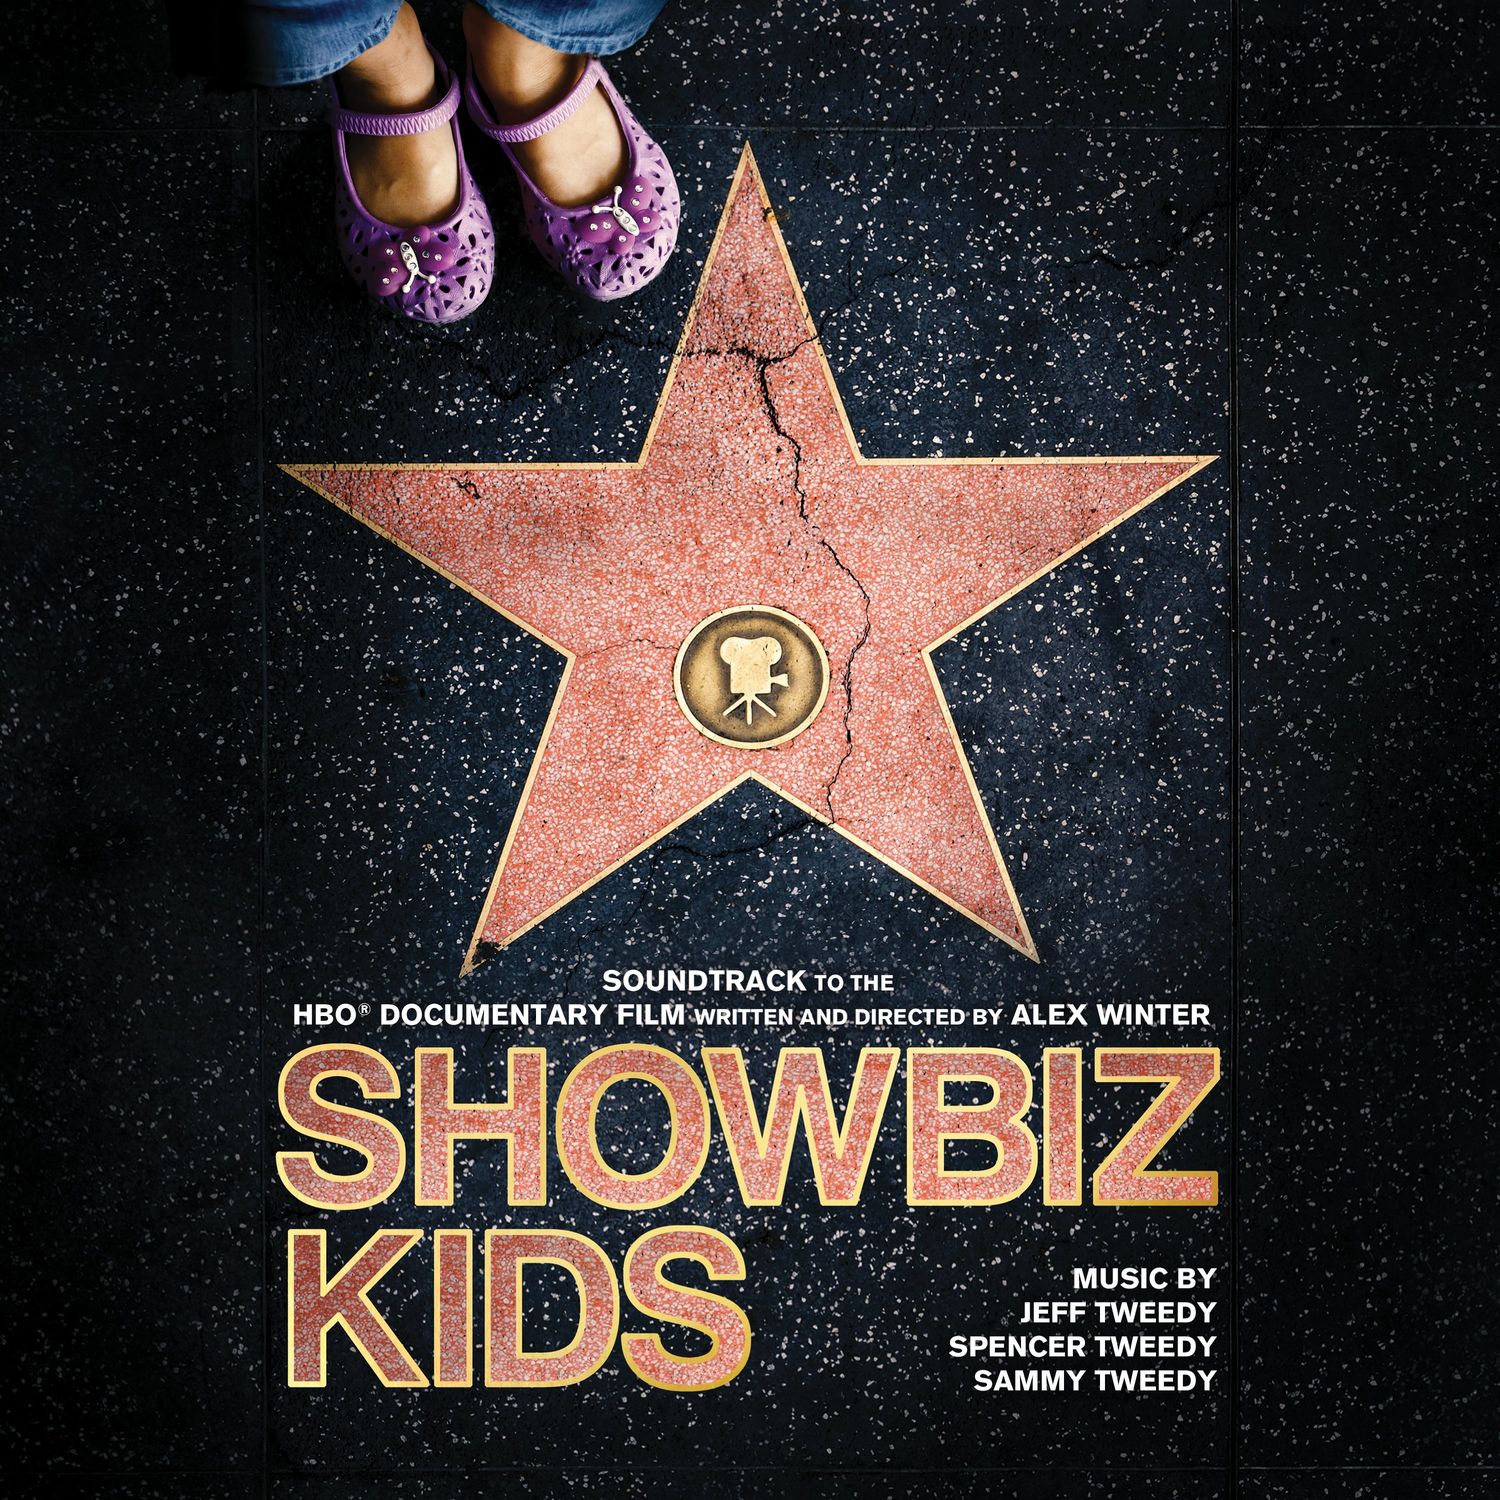 Jeff Tweedy, Sammy Tweedy & Spencer Tweedy - Showbiz Kids (Soundtrack to the HBO Documentary Film) (2020) [FLAC 24bit/44,1kHz]